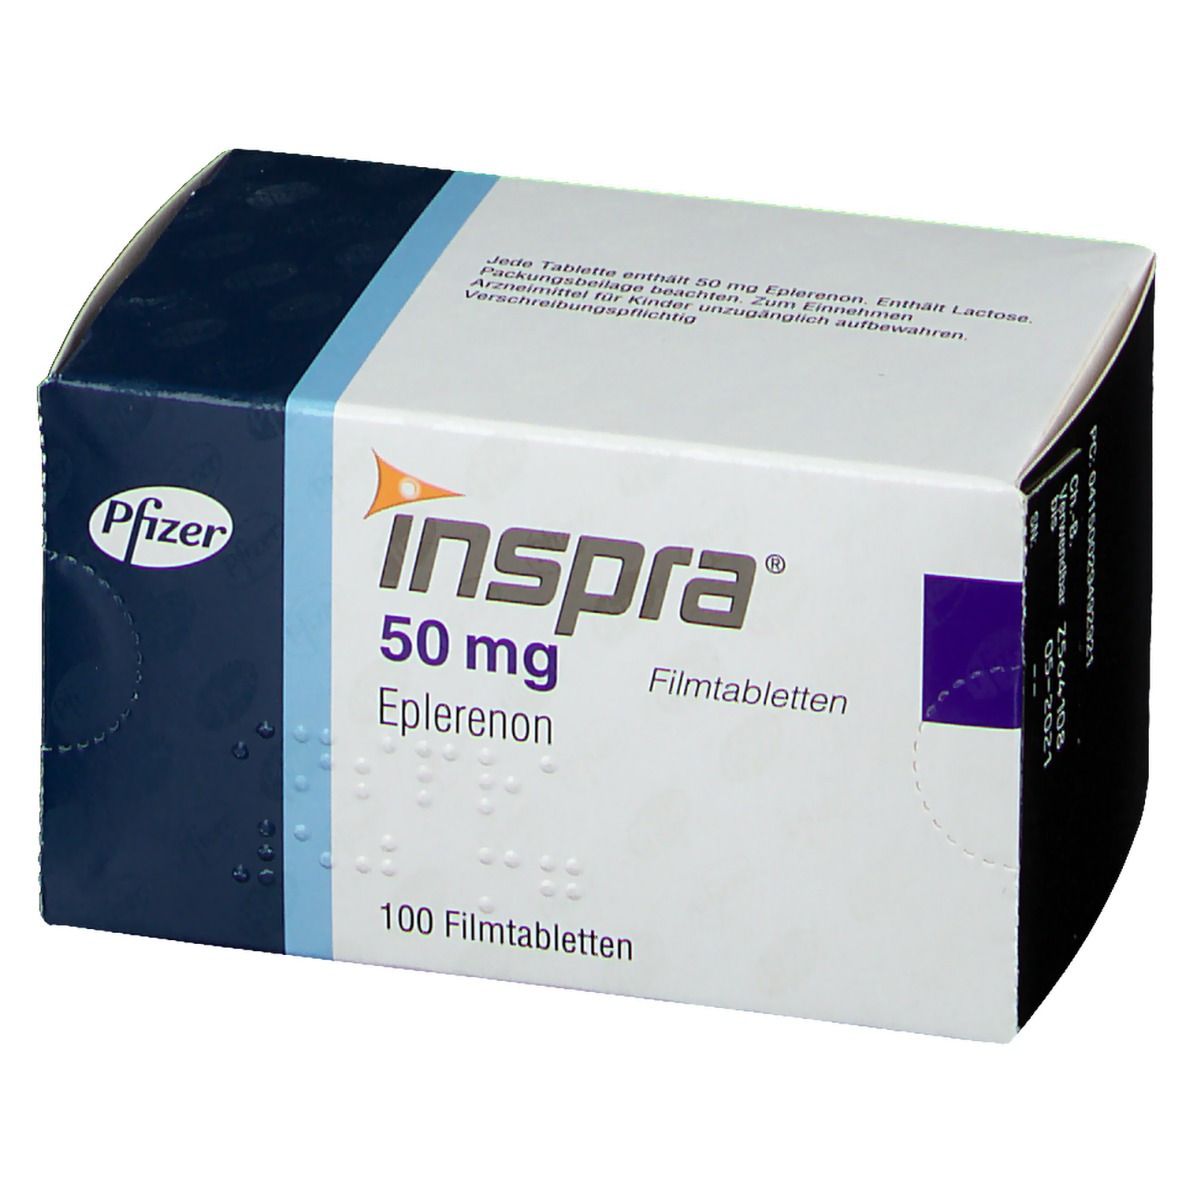 Inspra® 50 mg